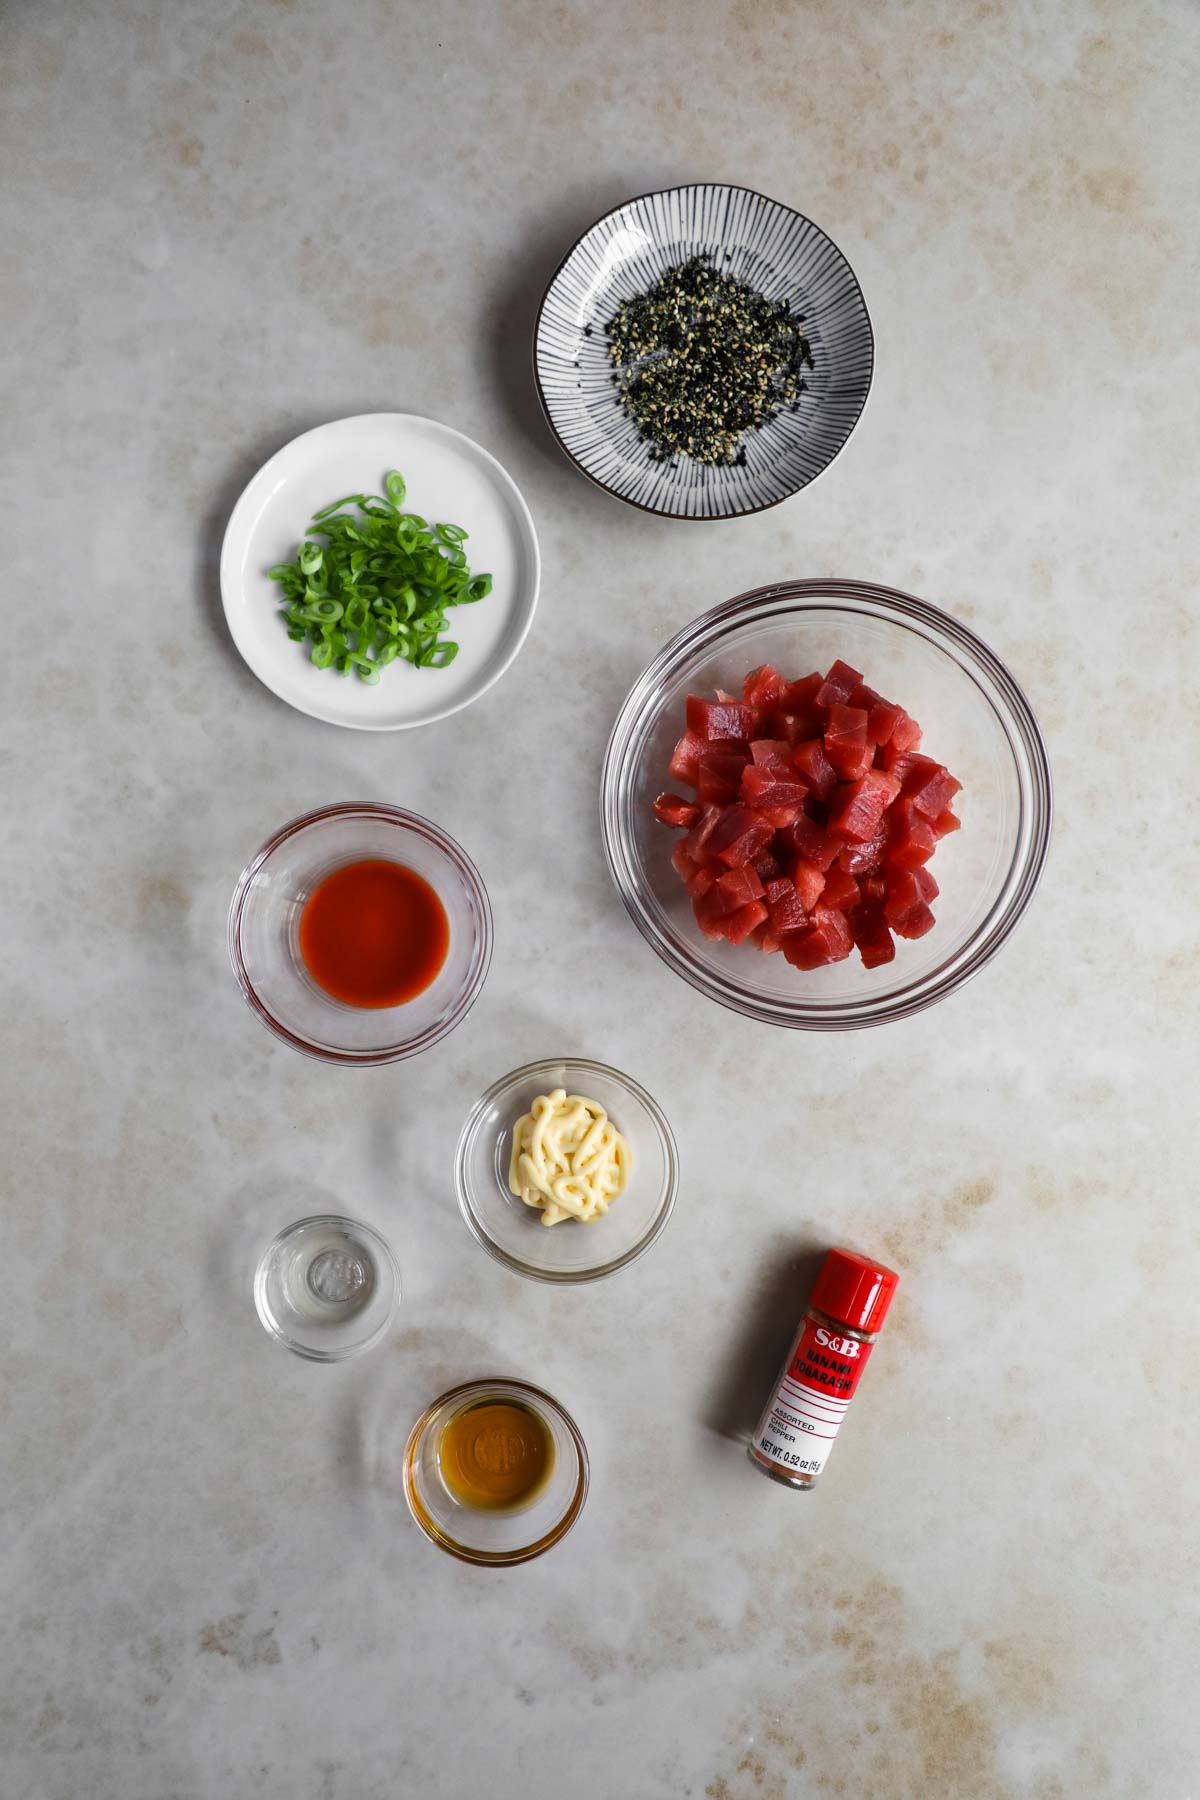 Spicy Ahi Poke Bowl Ingredients. Ahi tuna, furikake, scallions, togarashi, sesame oil, Sriracha, kewpie mayo, mirin.